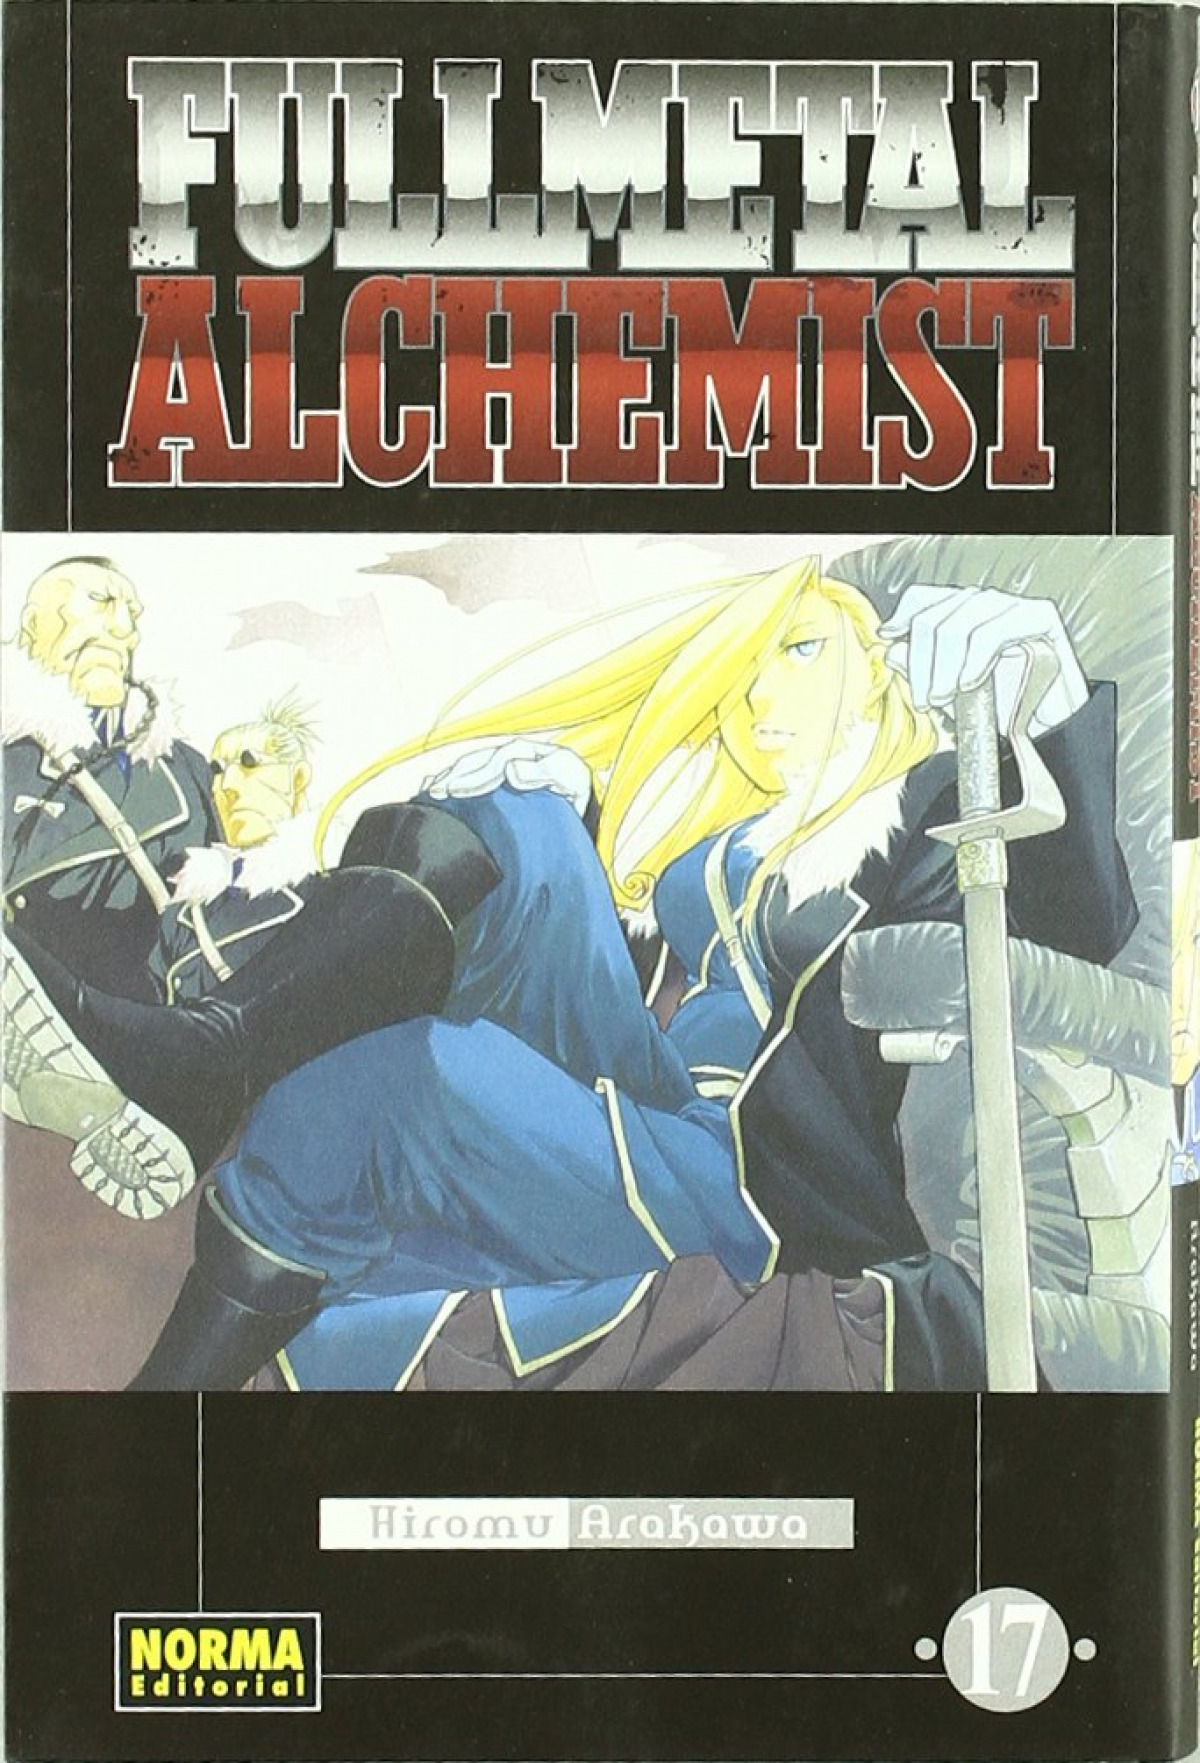 Fullmetal alchemist 17 - Arakawa, Hiromu